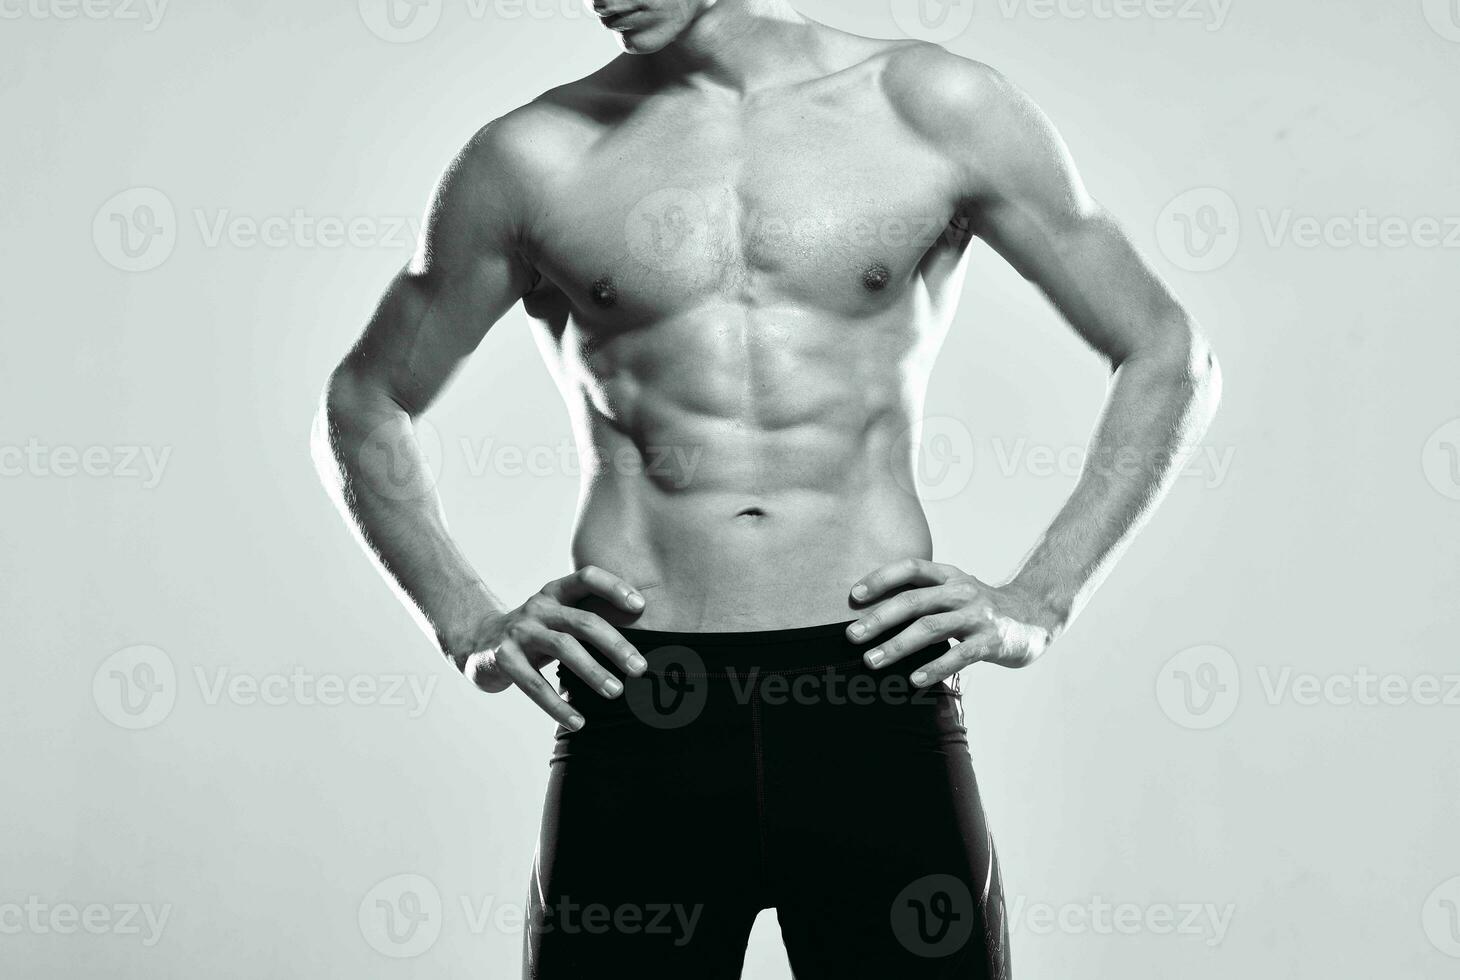 männlich Athlet aufgeblasen Torso trainieren posieren Fitnessstudio foto